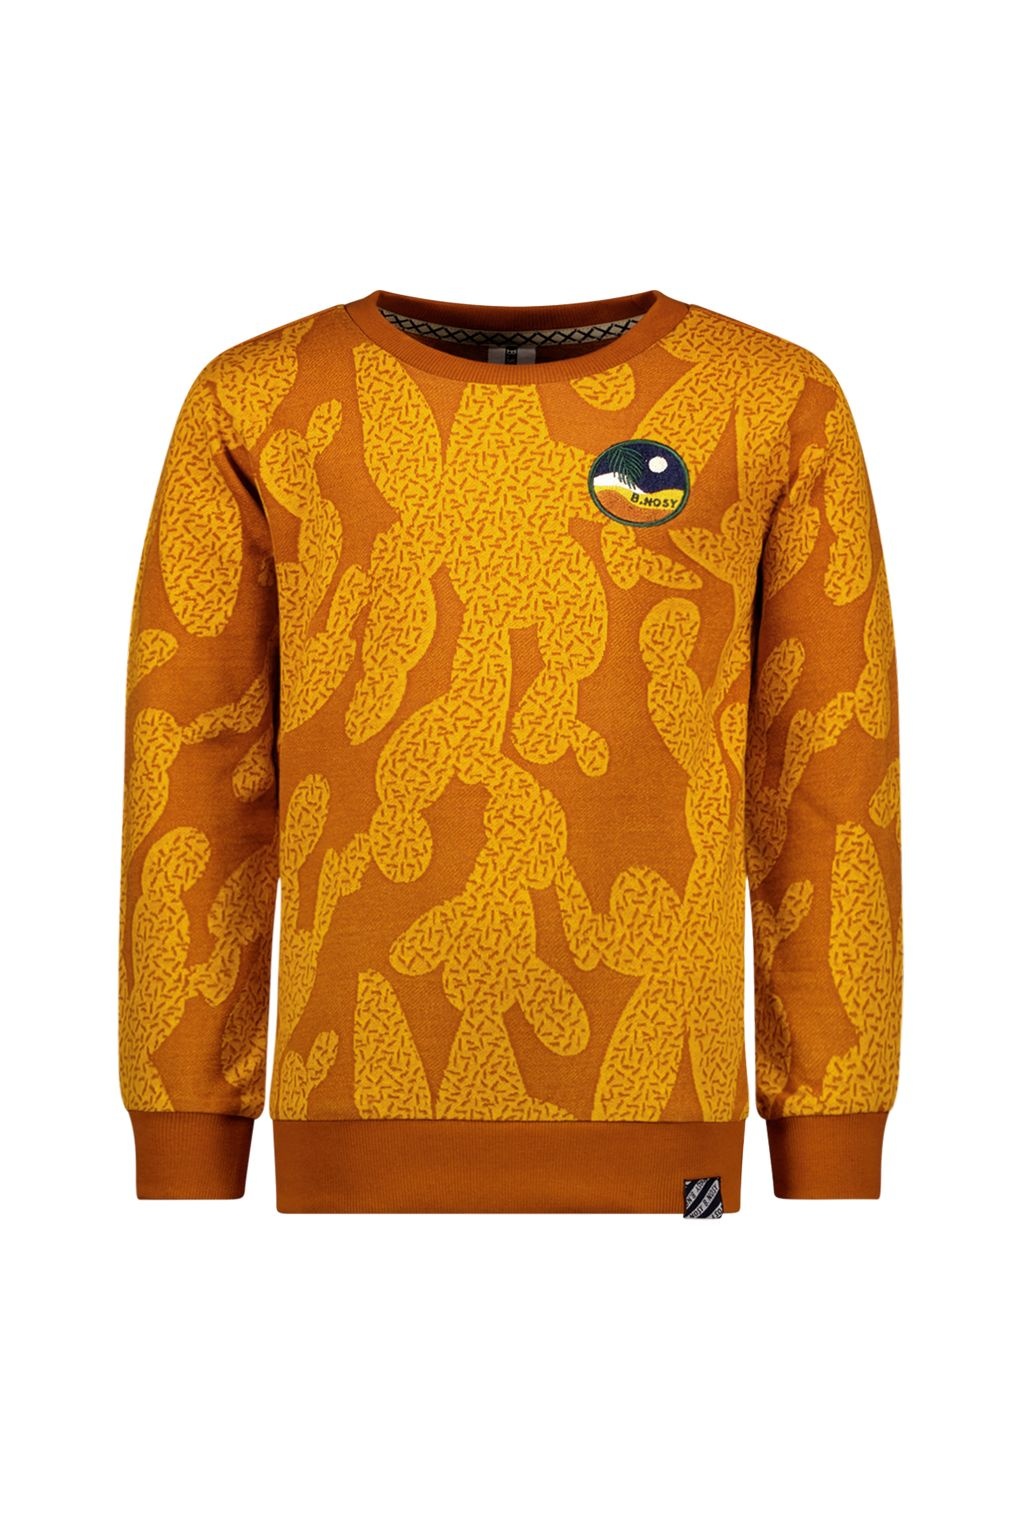 B.Nosy Jongens sweater - Guus - Groovy AOP